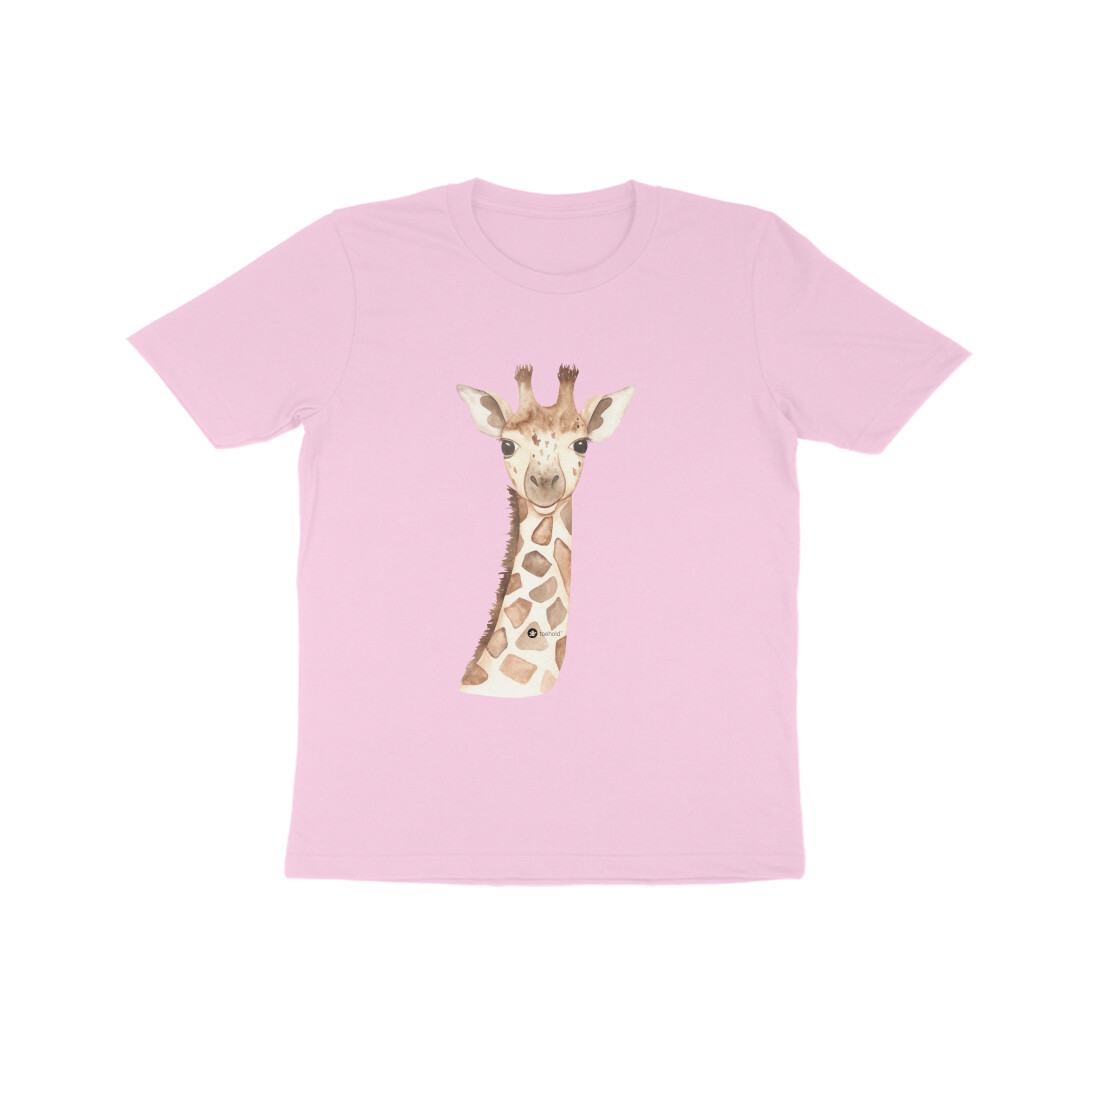 Giraffe Tee Shirt For Kids (7-14 Years) – Toehold ® Store